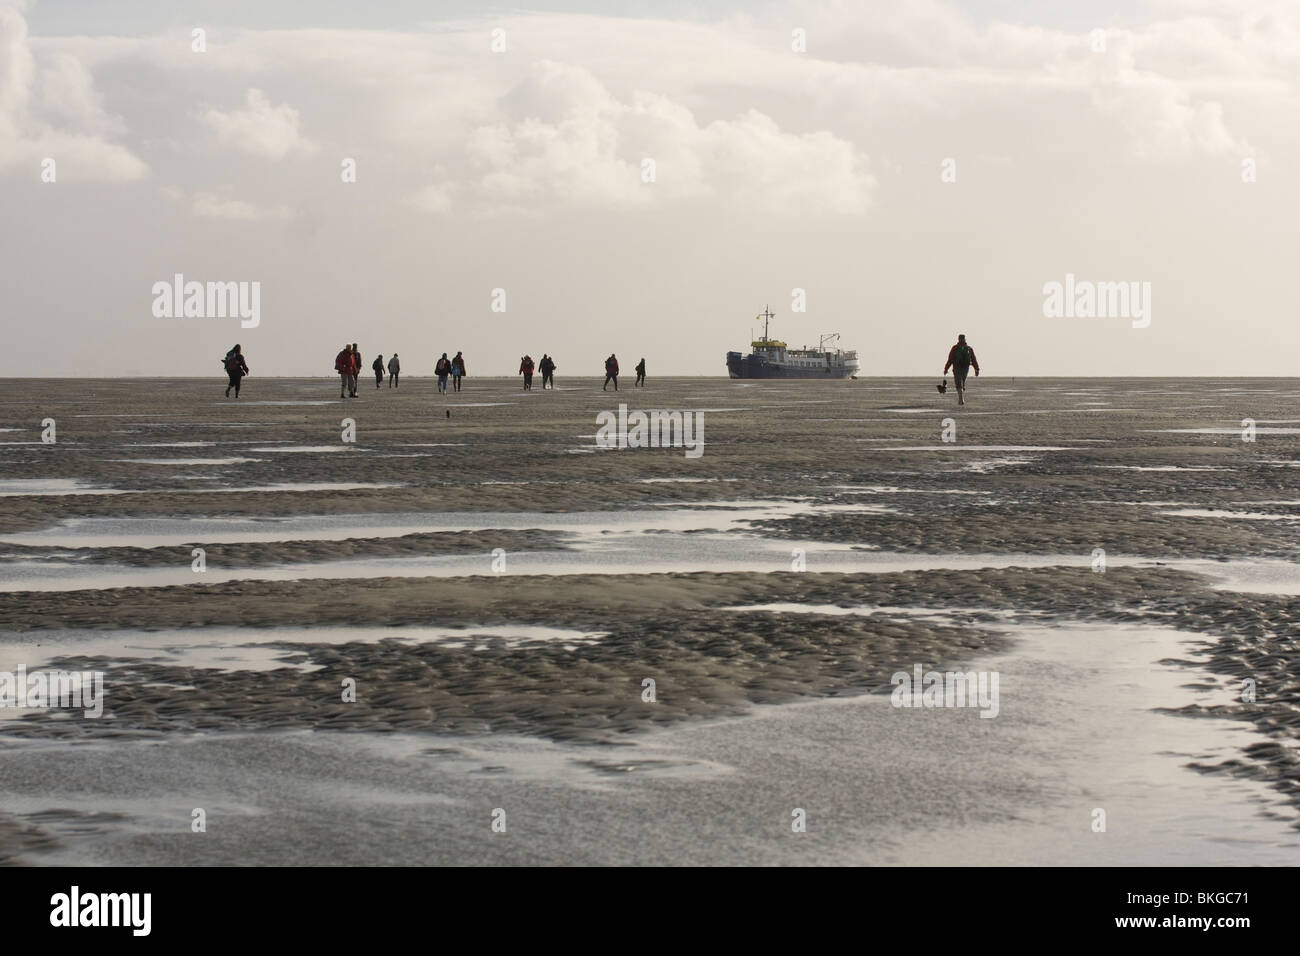 Los participantes de una excursión a Rottumeroog caminando de regreso al barco en la arena plana para abandonar la isla en marea alta. Foto de stock